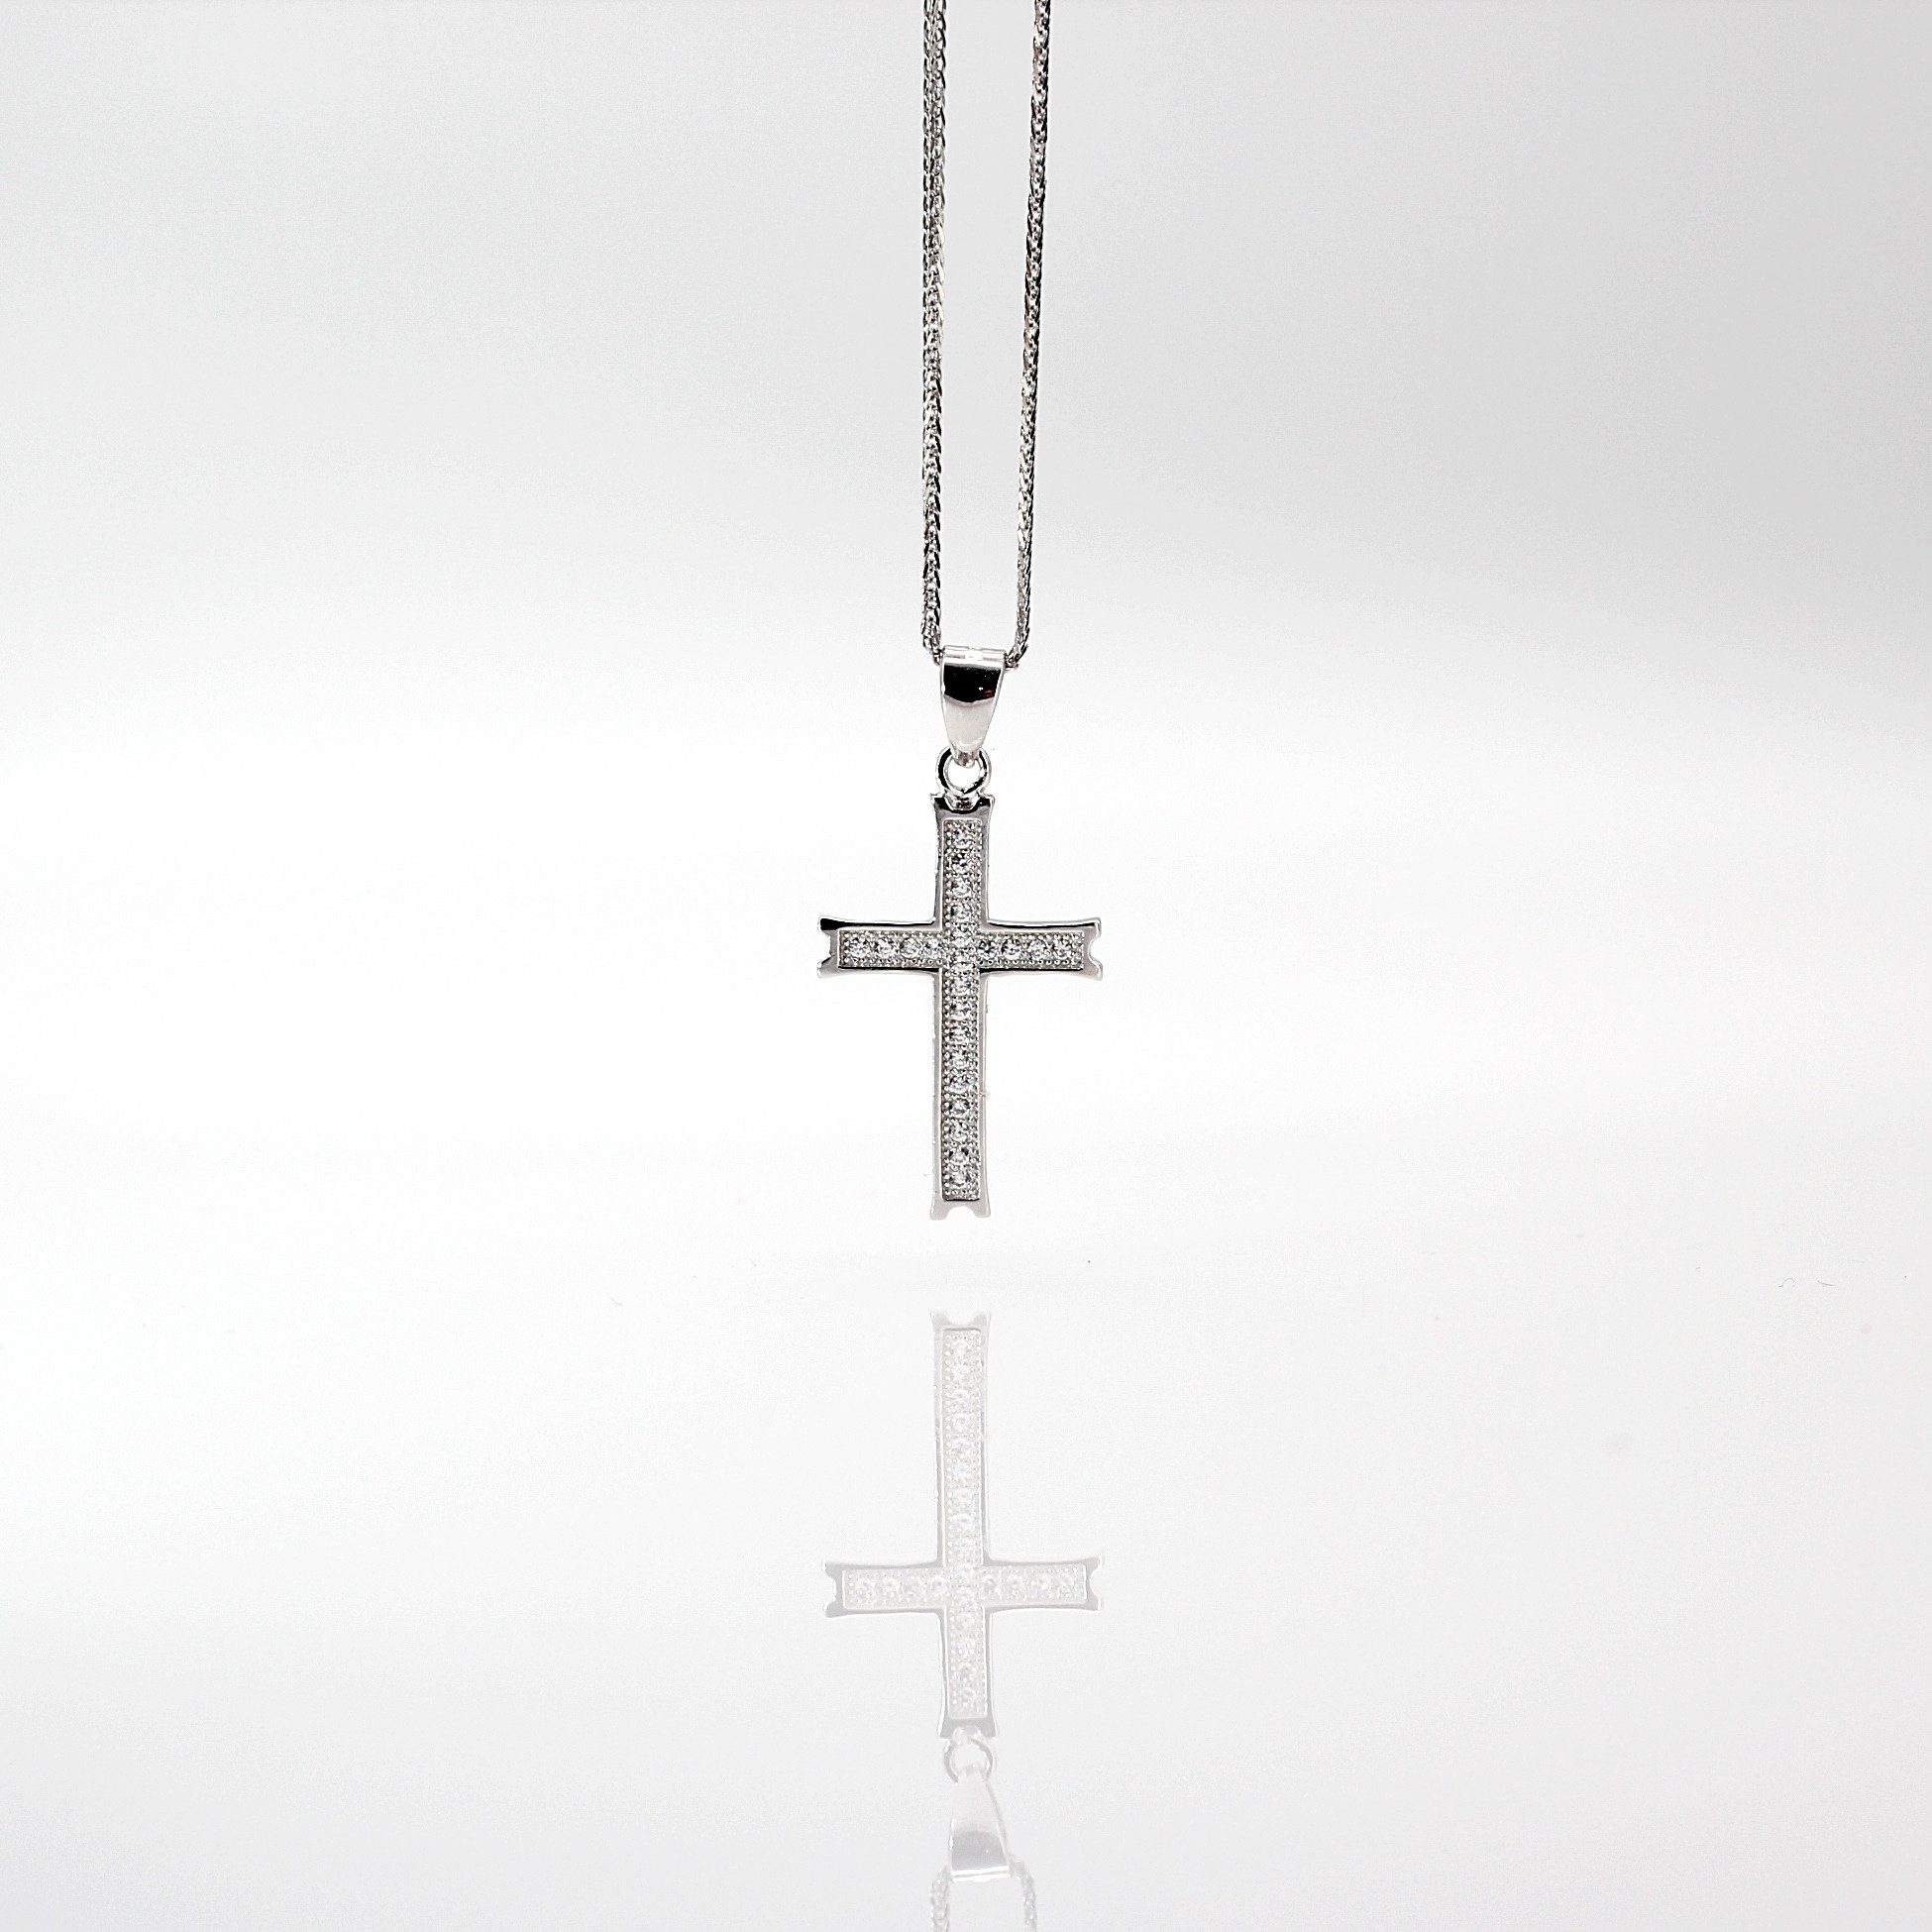 ELLAWIL Kreuzkette Silberkette mit Kreuz Anhänger Halskette Jesuskreuz Christus Kirche (Kettenlänge 40 cm, Sterling Silber 925), inklusive Geschenkschachtel